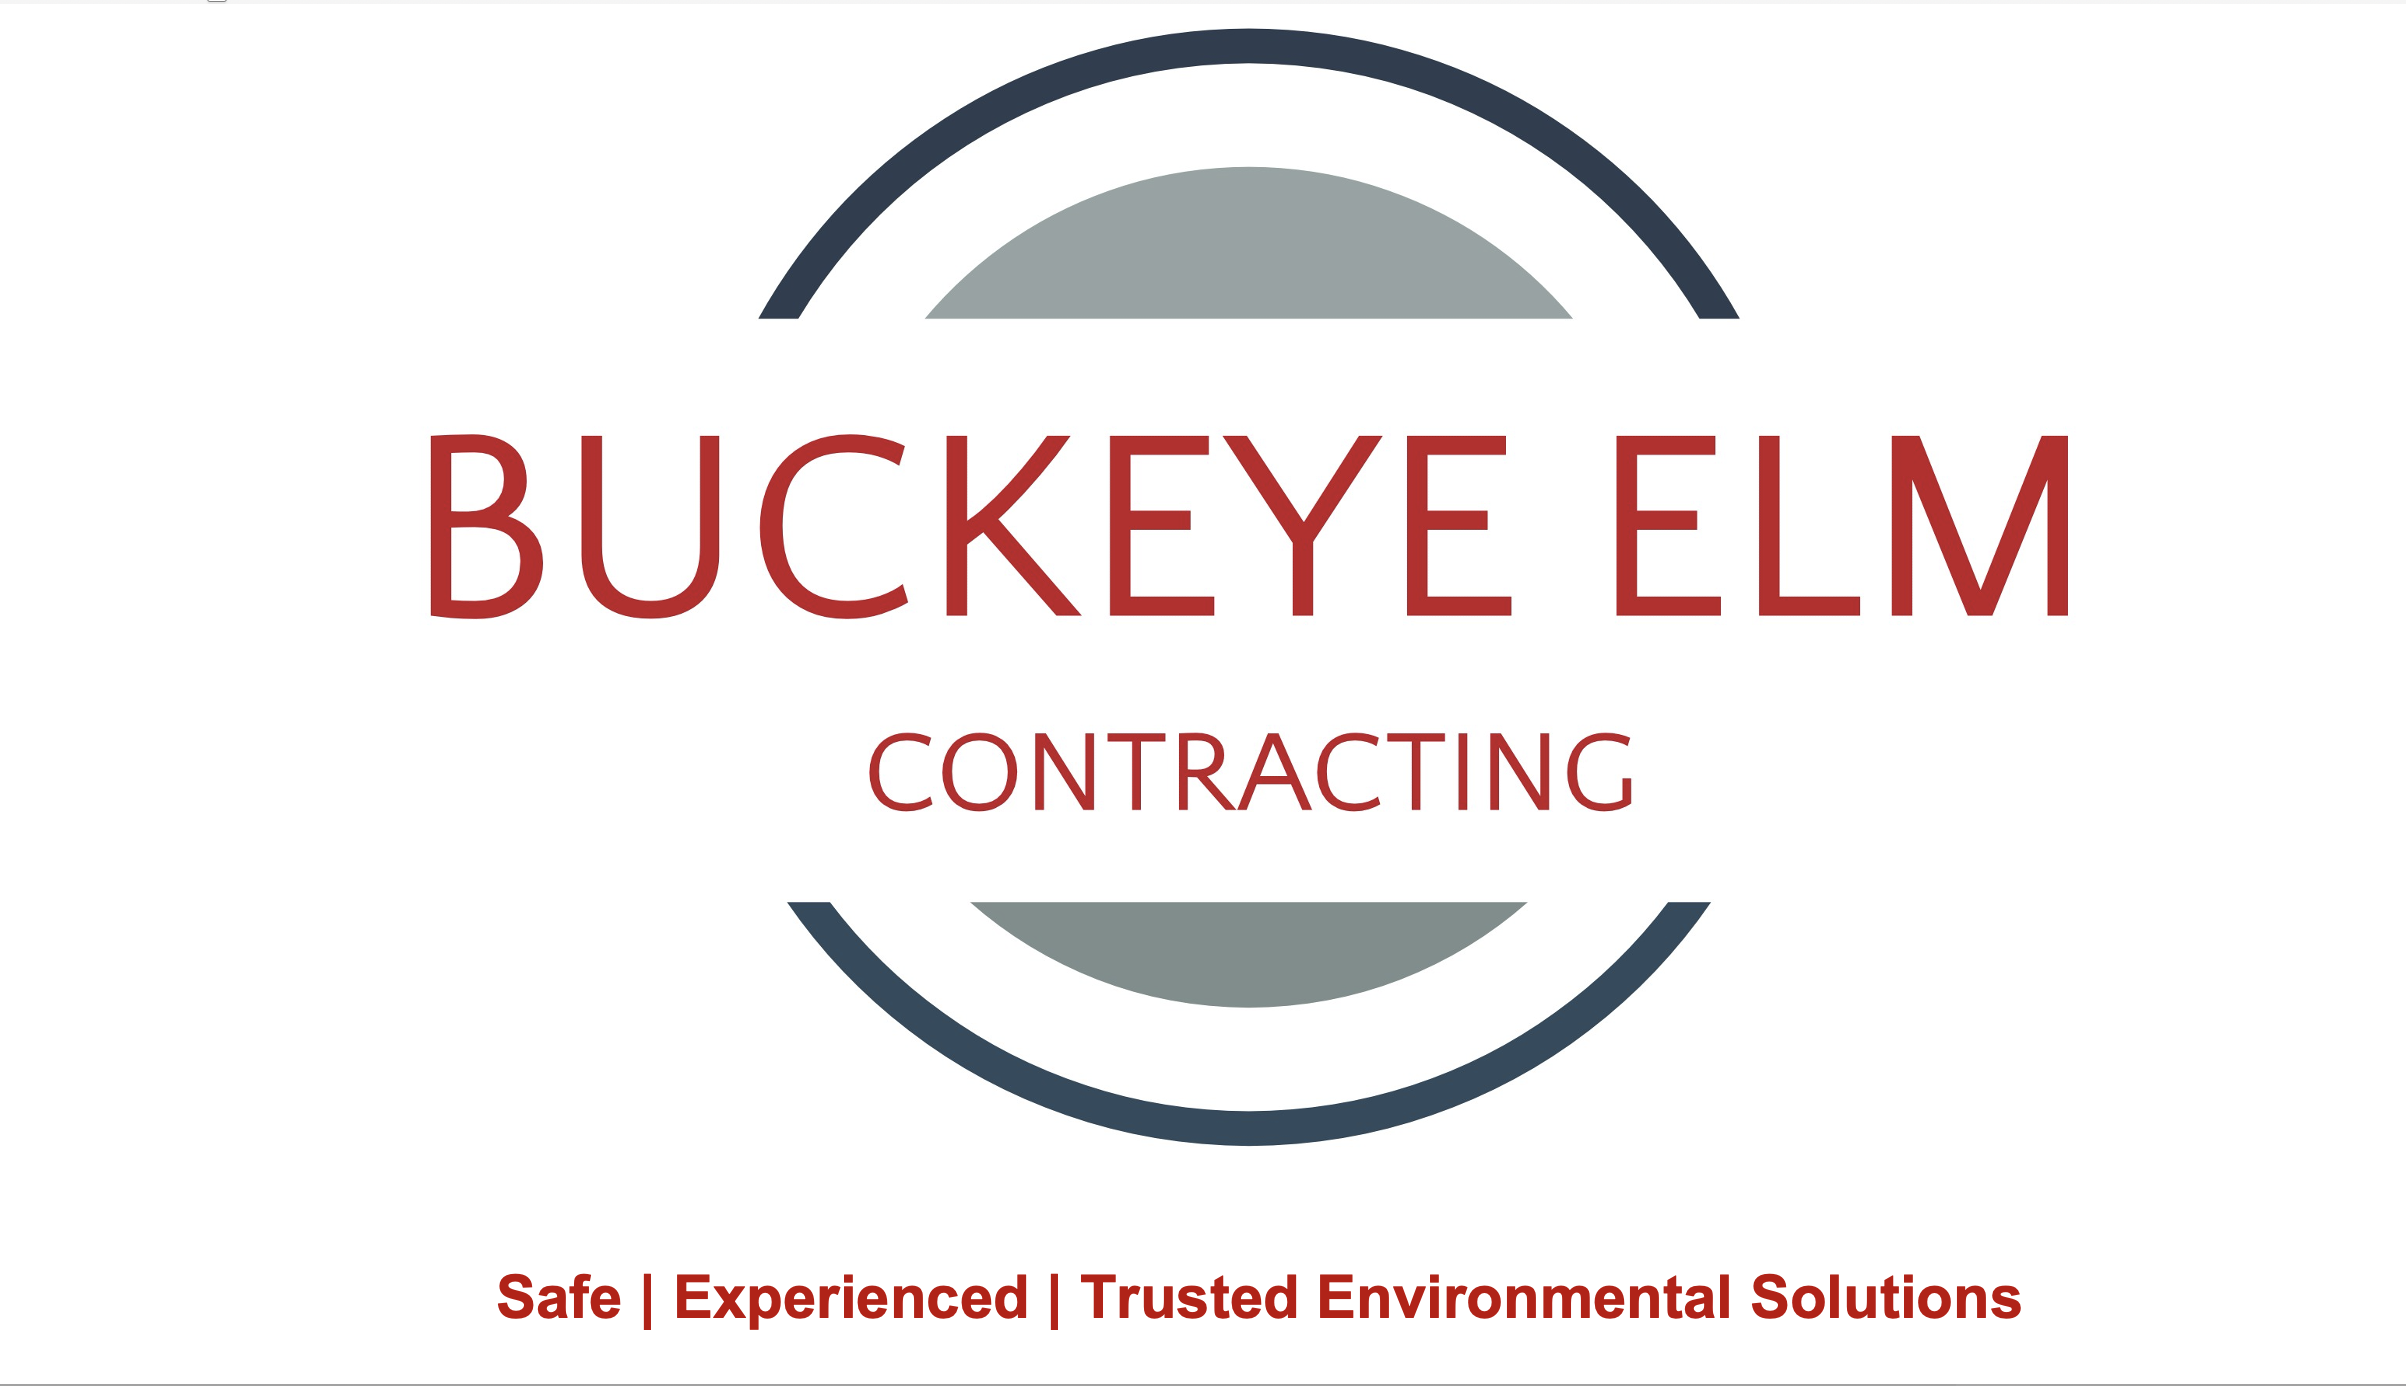 Buckeye Elm Contracting